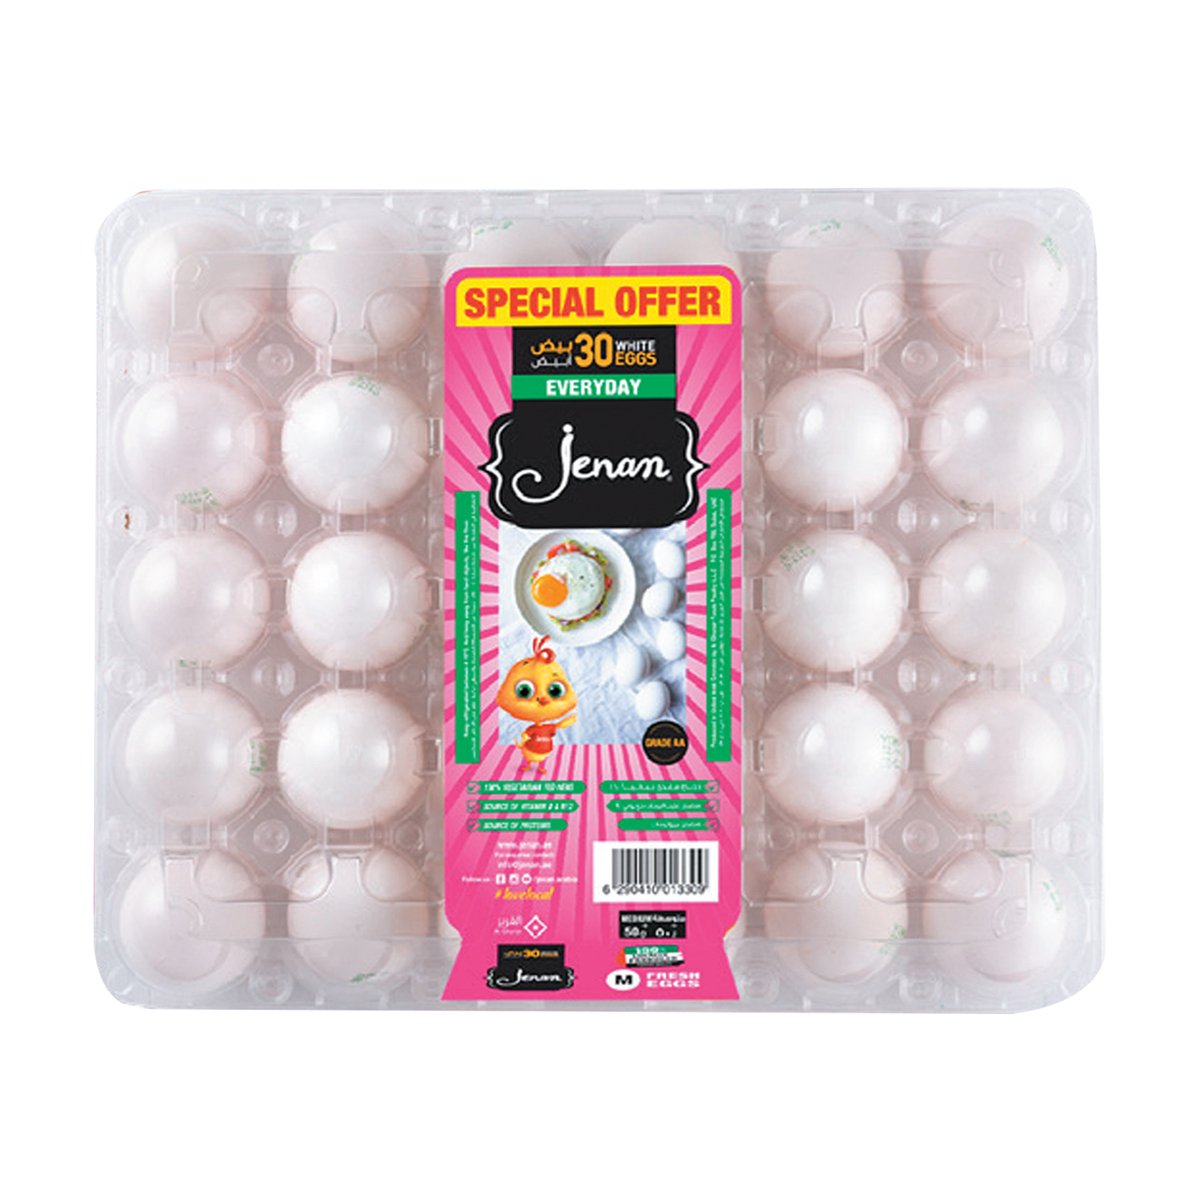 Jenan White/Brown Eggs Medium Value Pack 30pcs